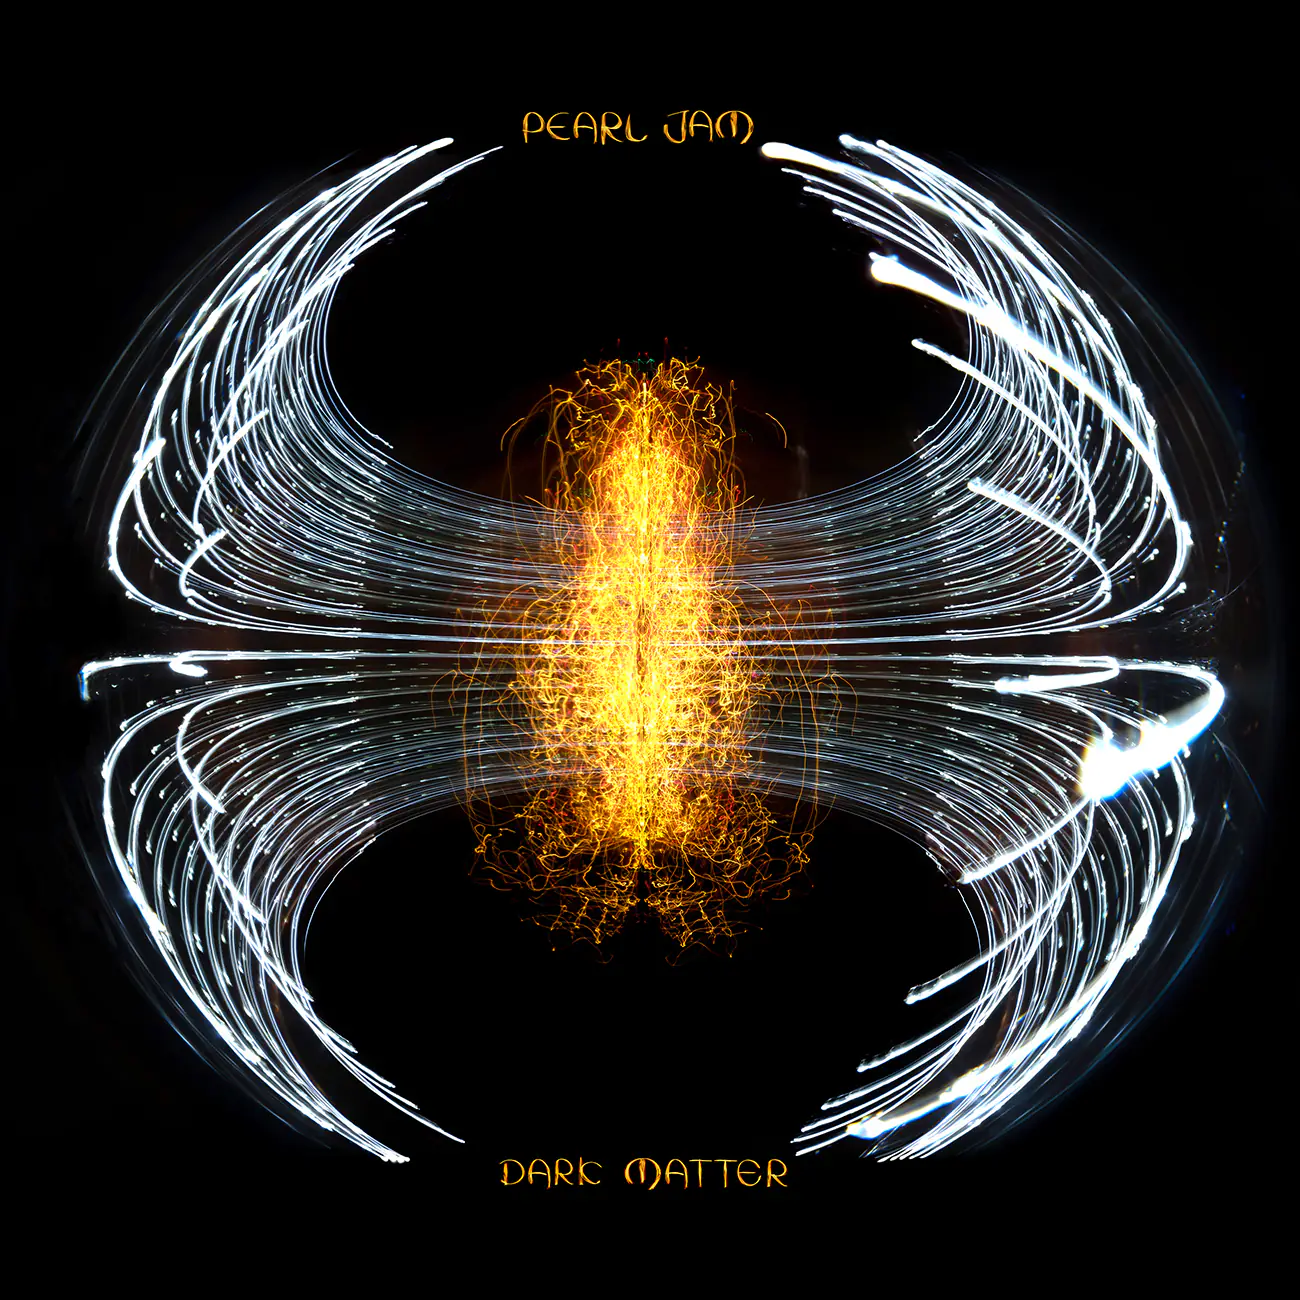 ALBUM REVIEW: Pearl Jam – Dark Matter